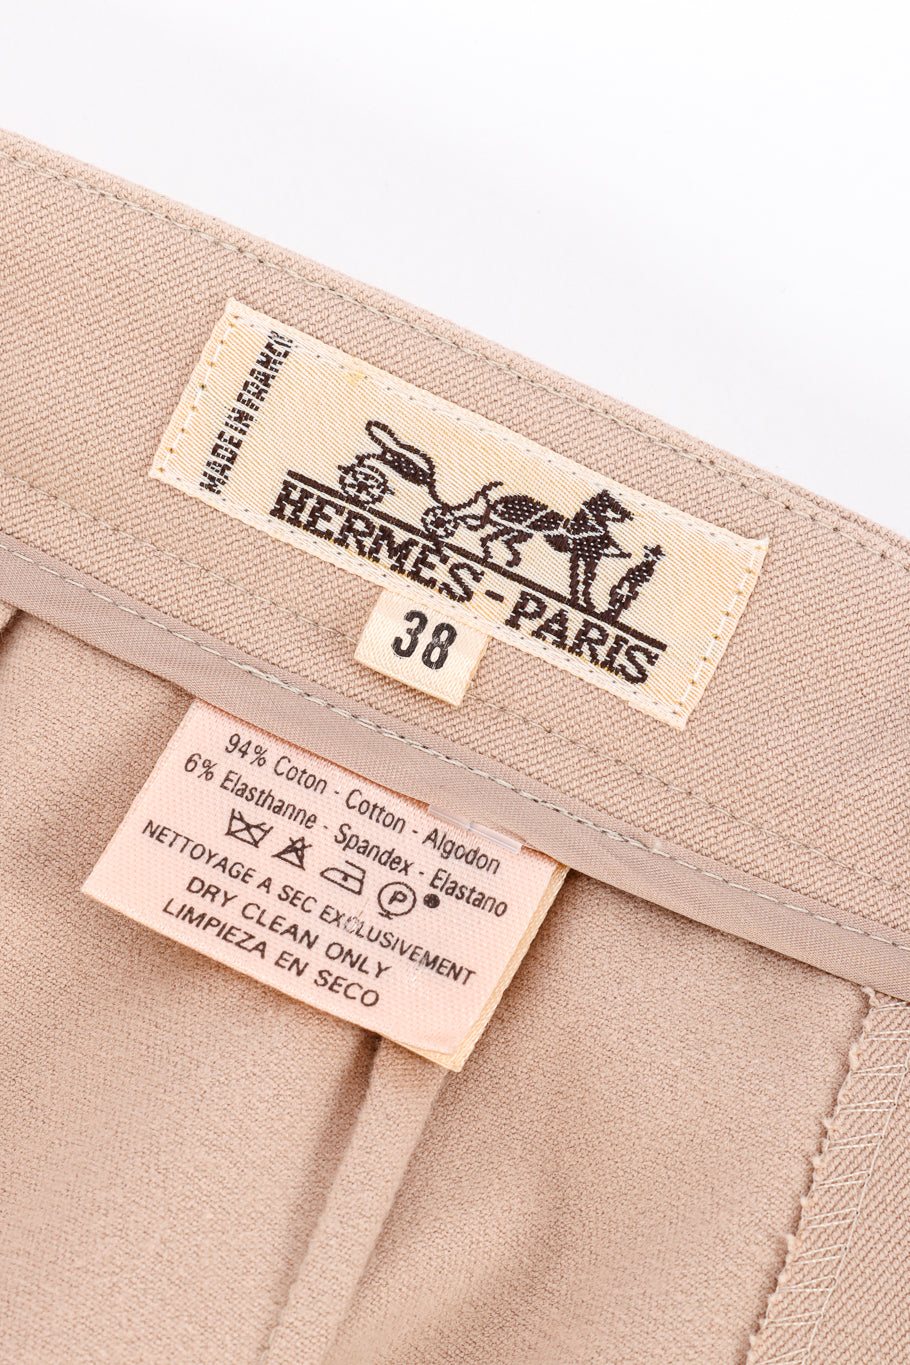 Vintage Hermés High Waist Cotton Pant signature label @recess la